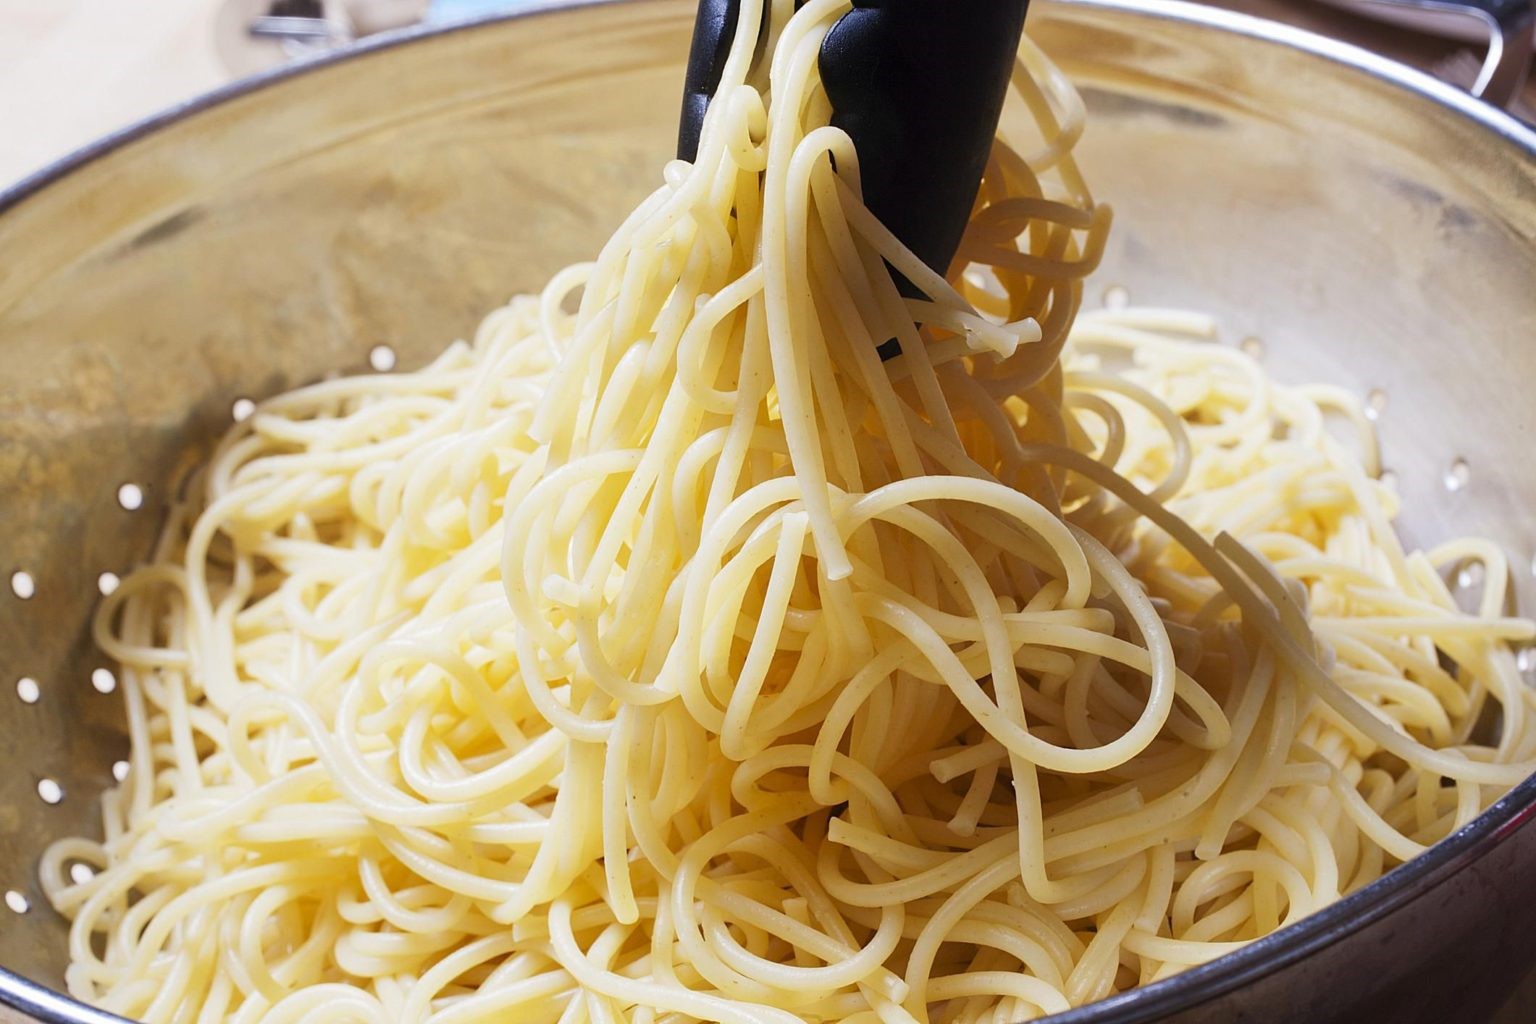 Отварить спагетти